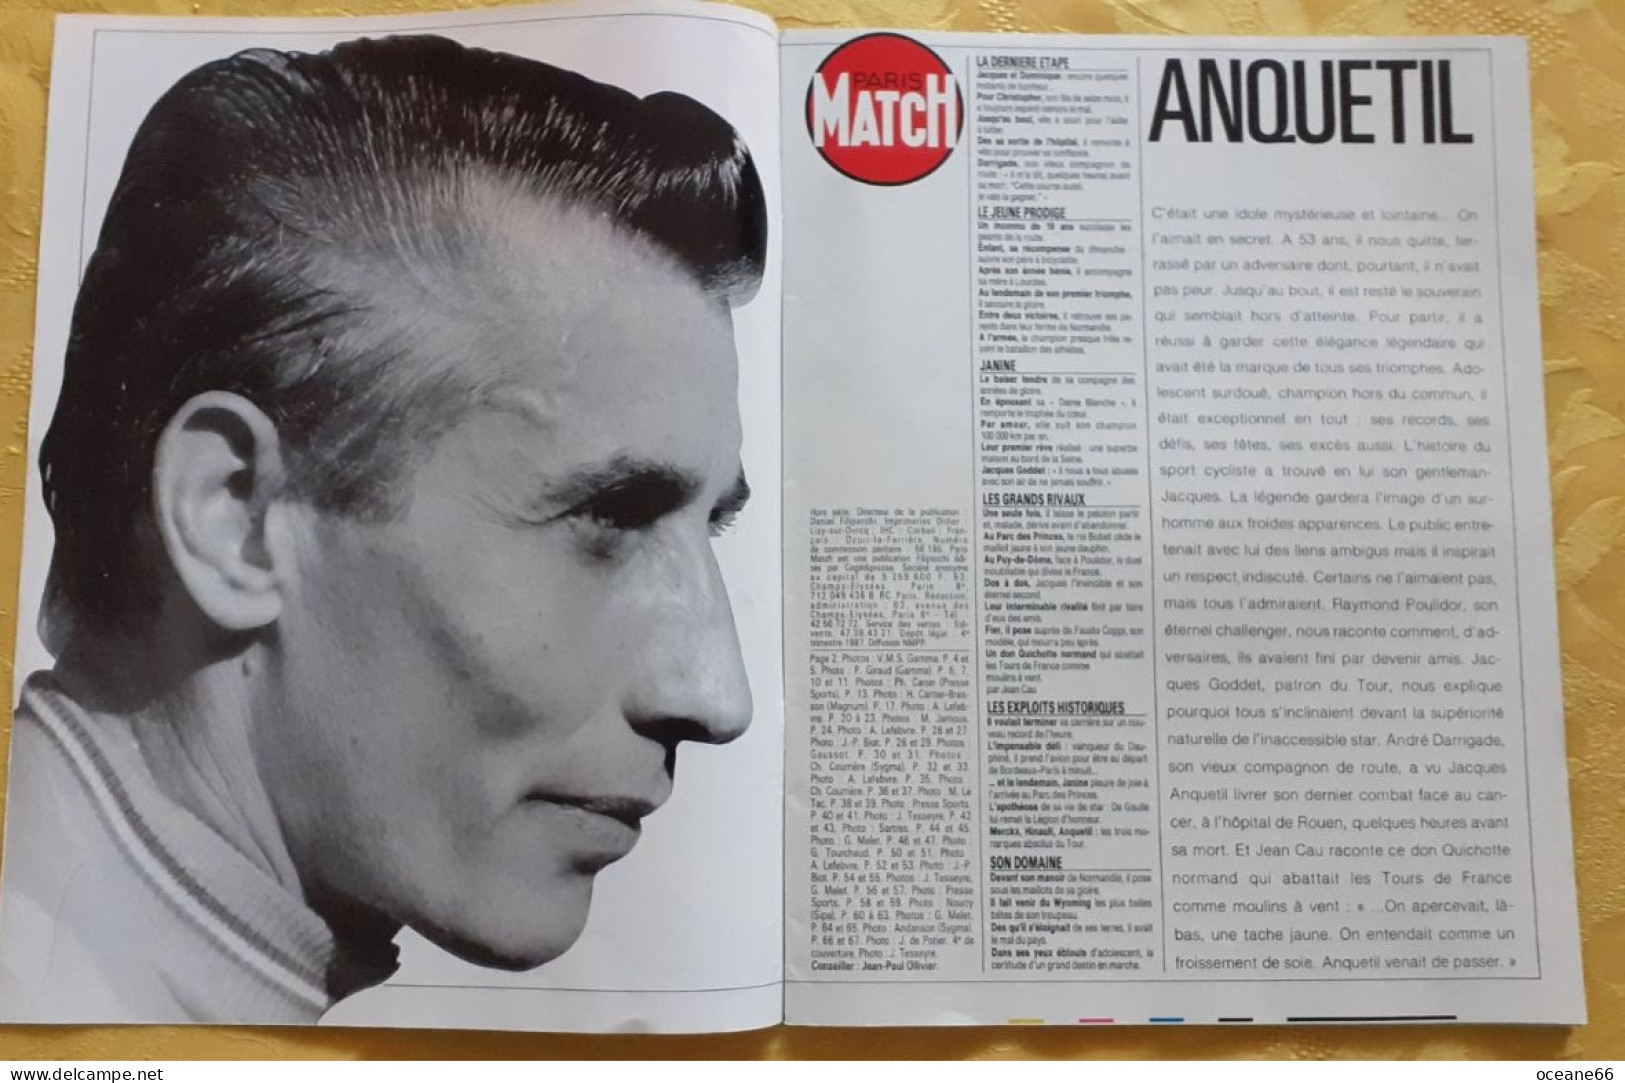 Paris Match Jacques Anquetil Hors Série Nombreuses Photos - Cycling